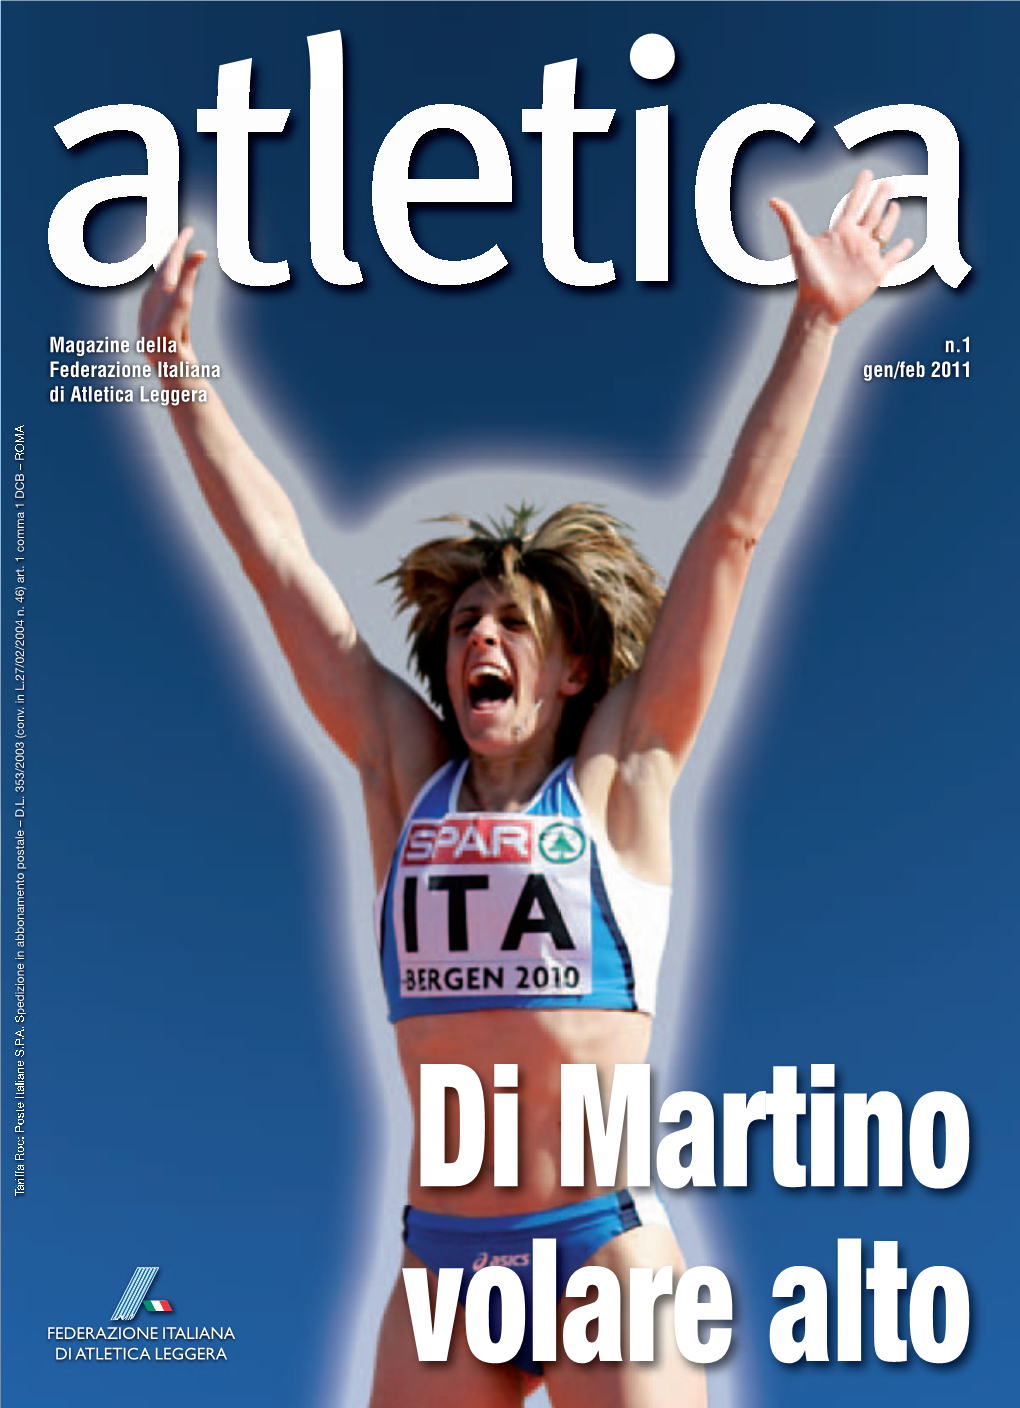 Magazine Della N.1 Federazione Italiana Gen/Feb 2011 Di Atletica Leggera Anno LXXVII/Gennaio/Febbraio 2011